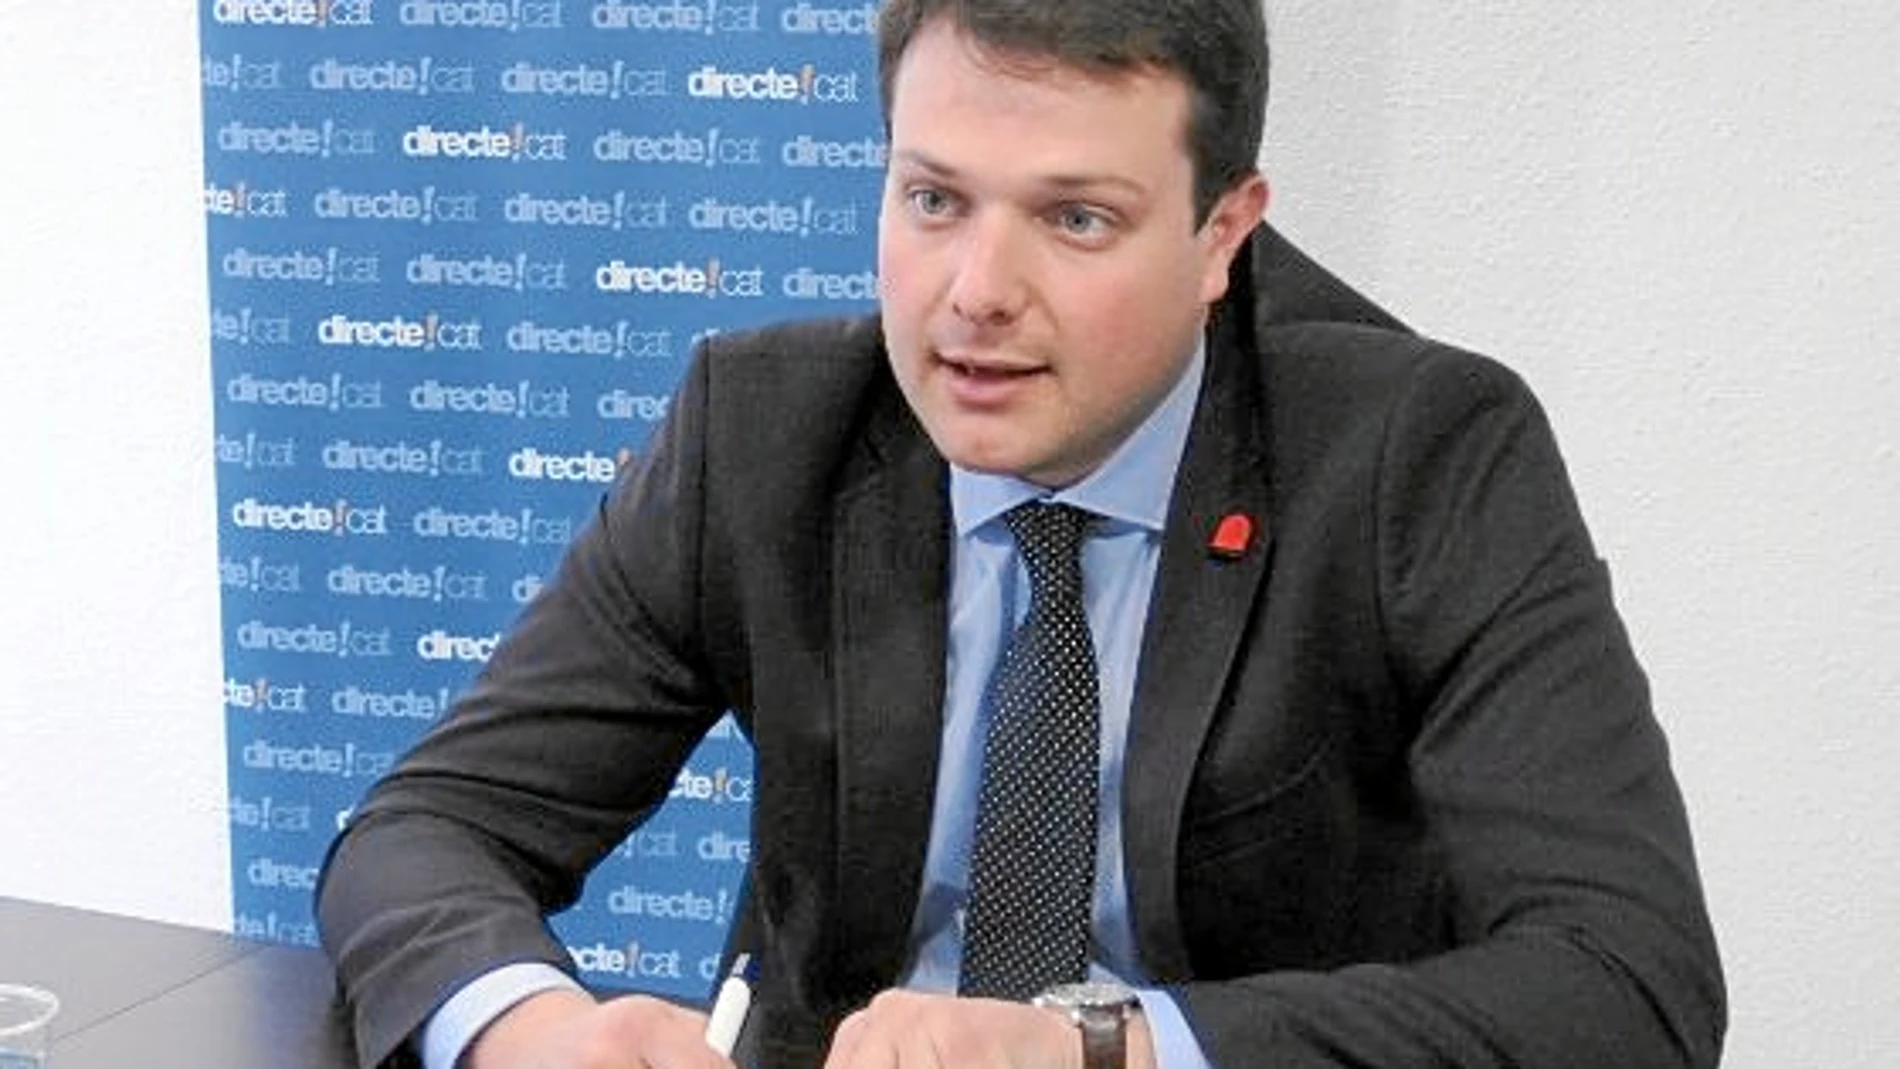 El diputado Gerard Figueras es también el presidente de las juventudes de Convergència Democràtica